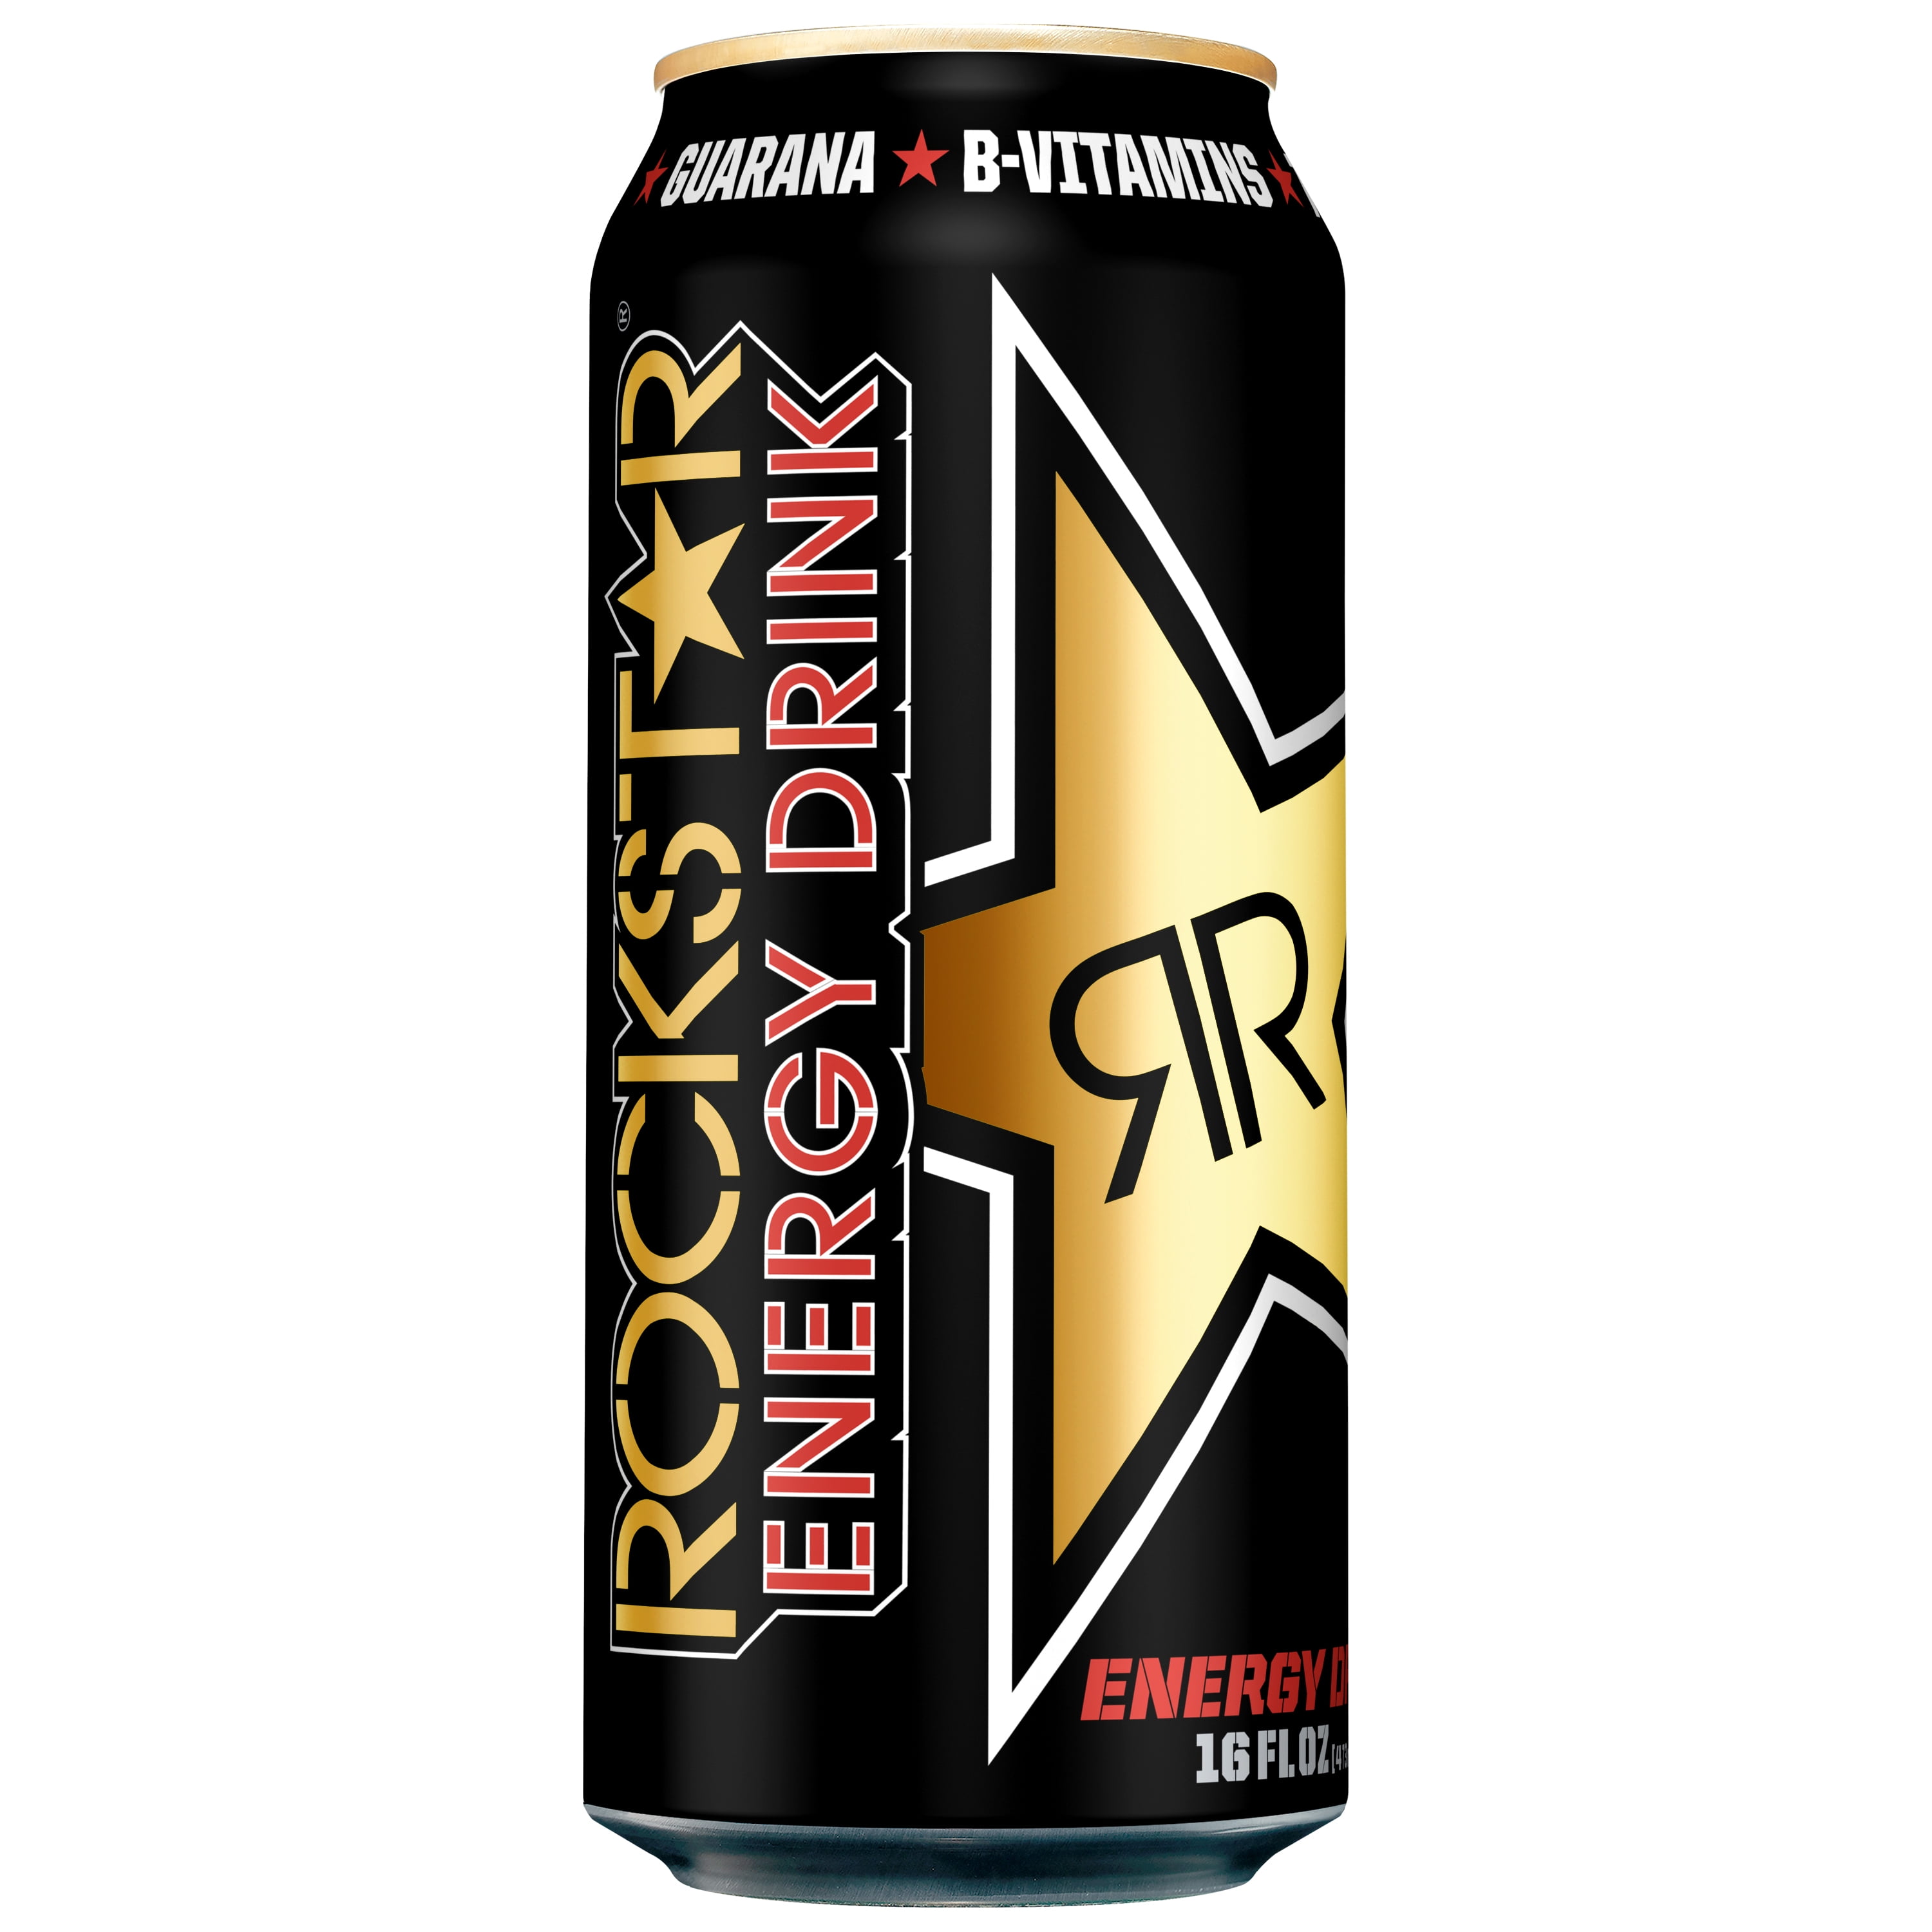 Энергетики на голодный. Энергетические напитки. Rockstar Energy Drink одежда. Xtc энергетический напиток. Энергетический напиток Monster Energy vr46.